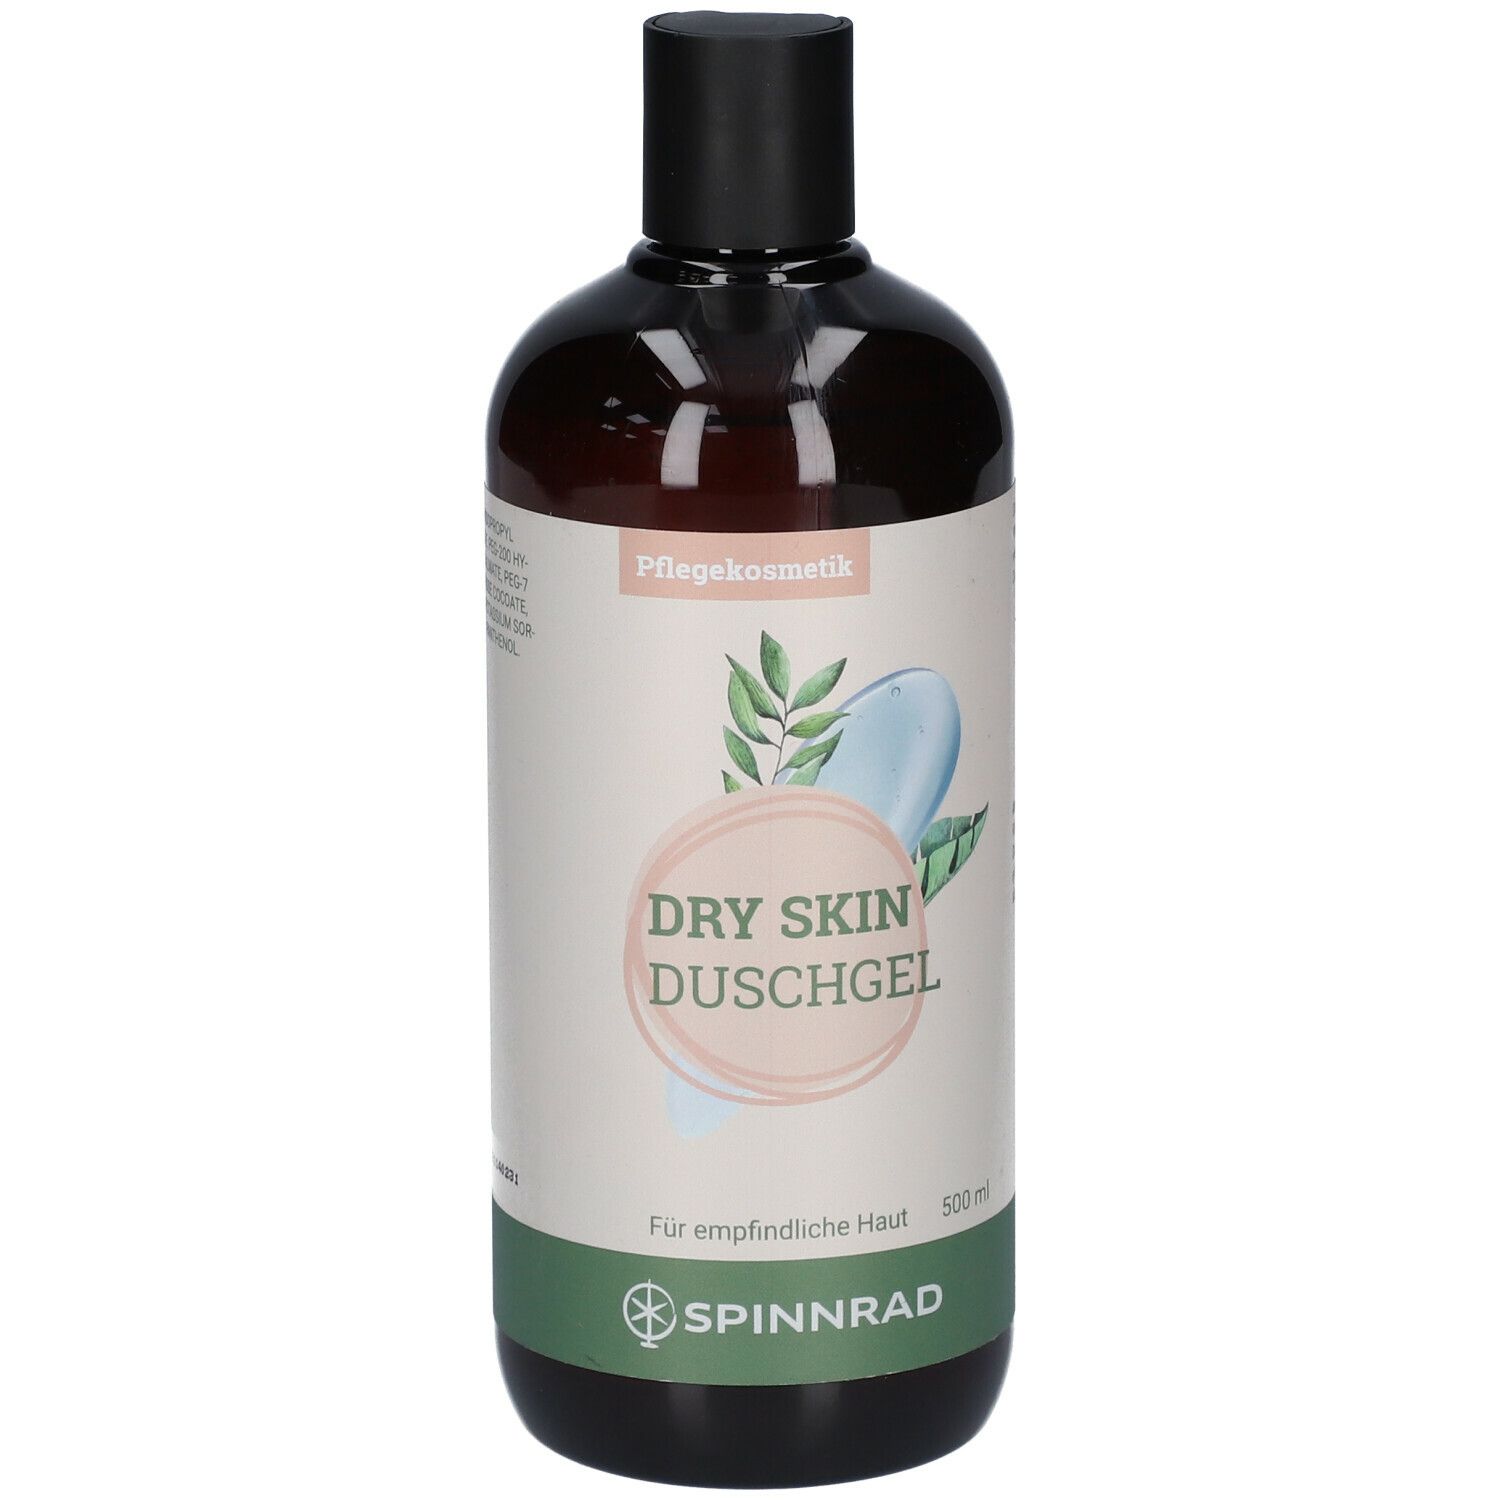 Spinnrad® Dry Skin Duschgel